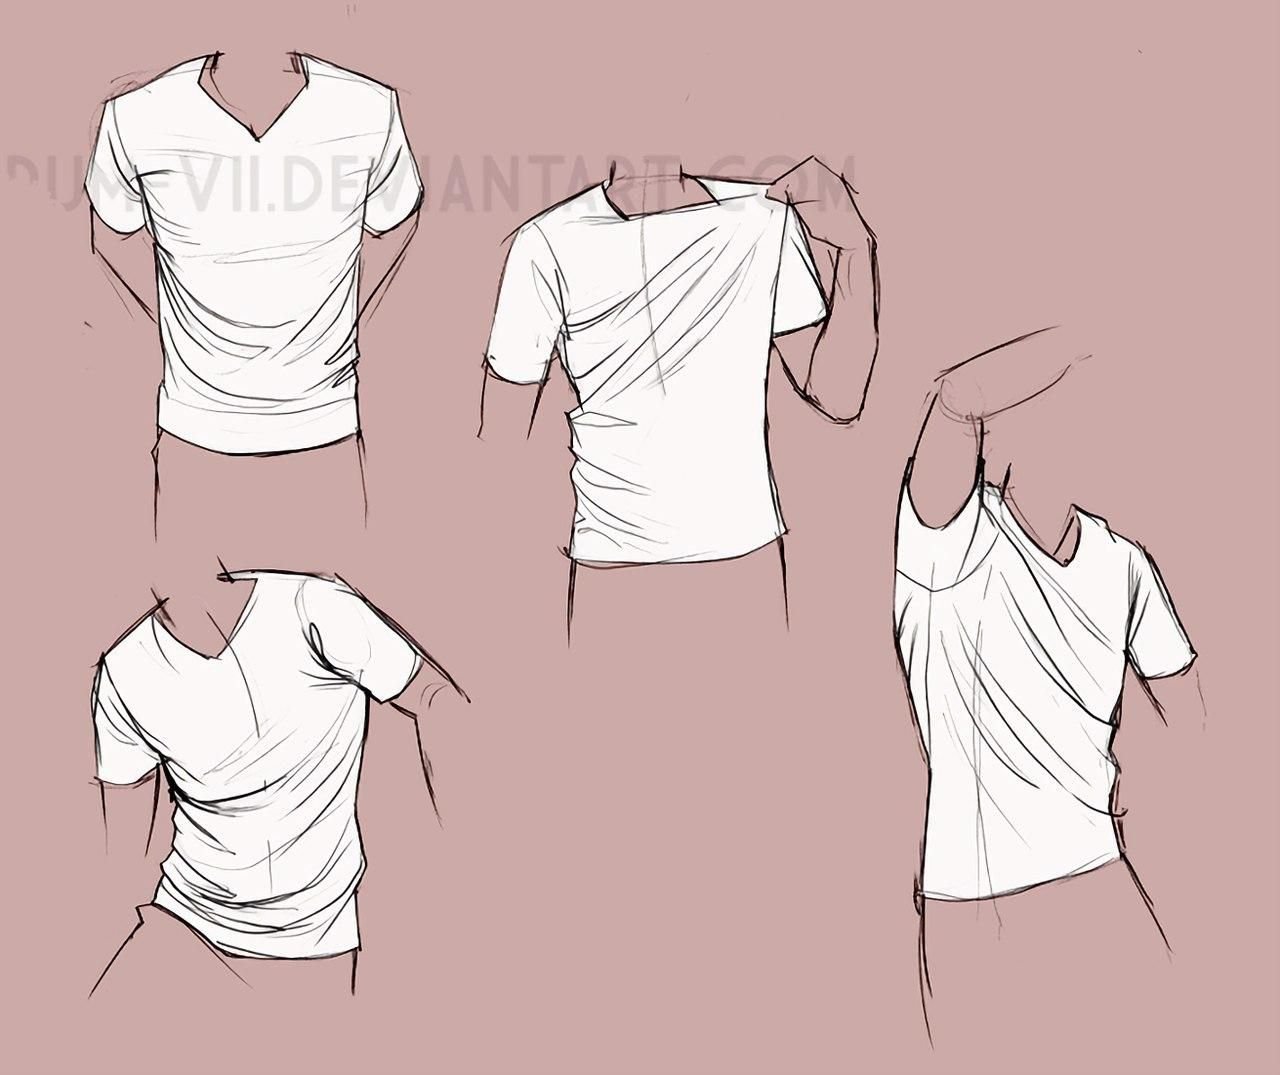 Как правильно снимать футболку